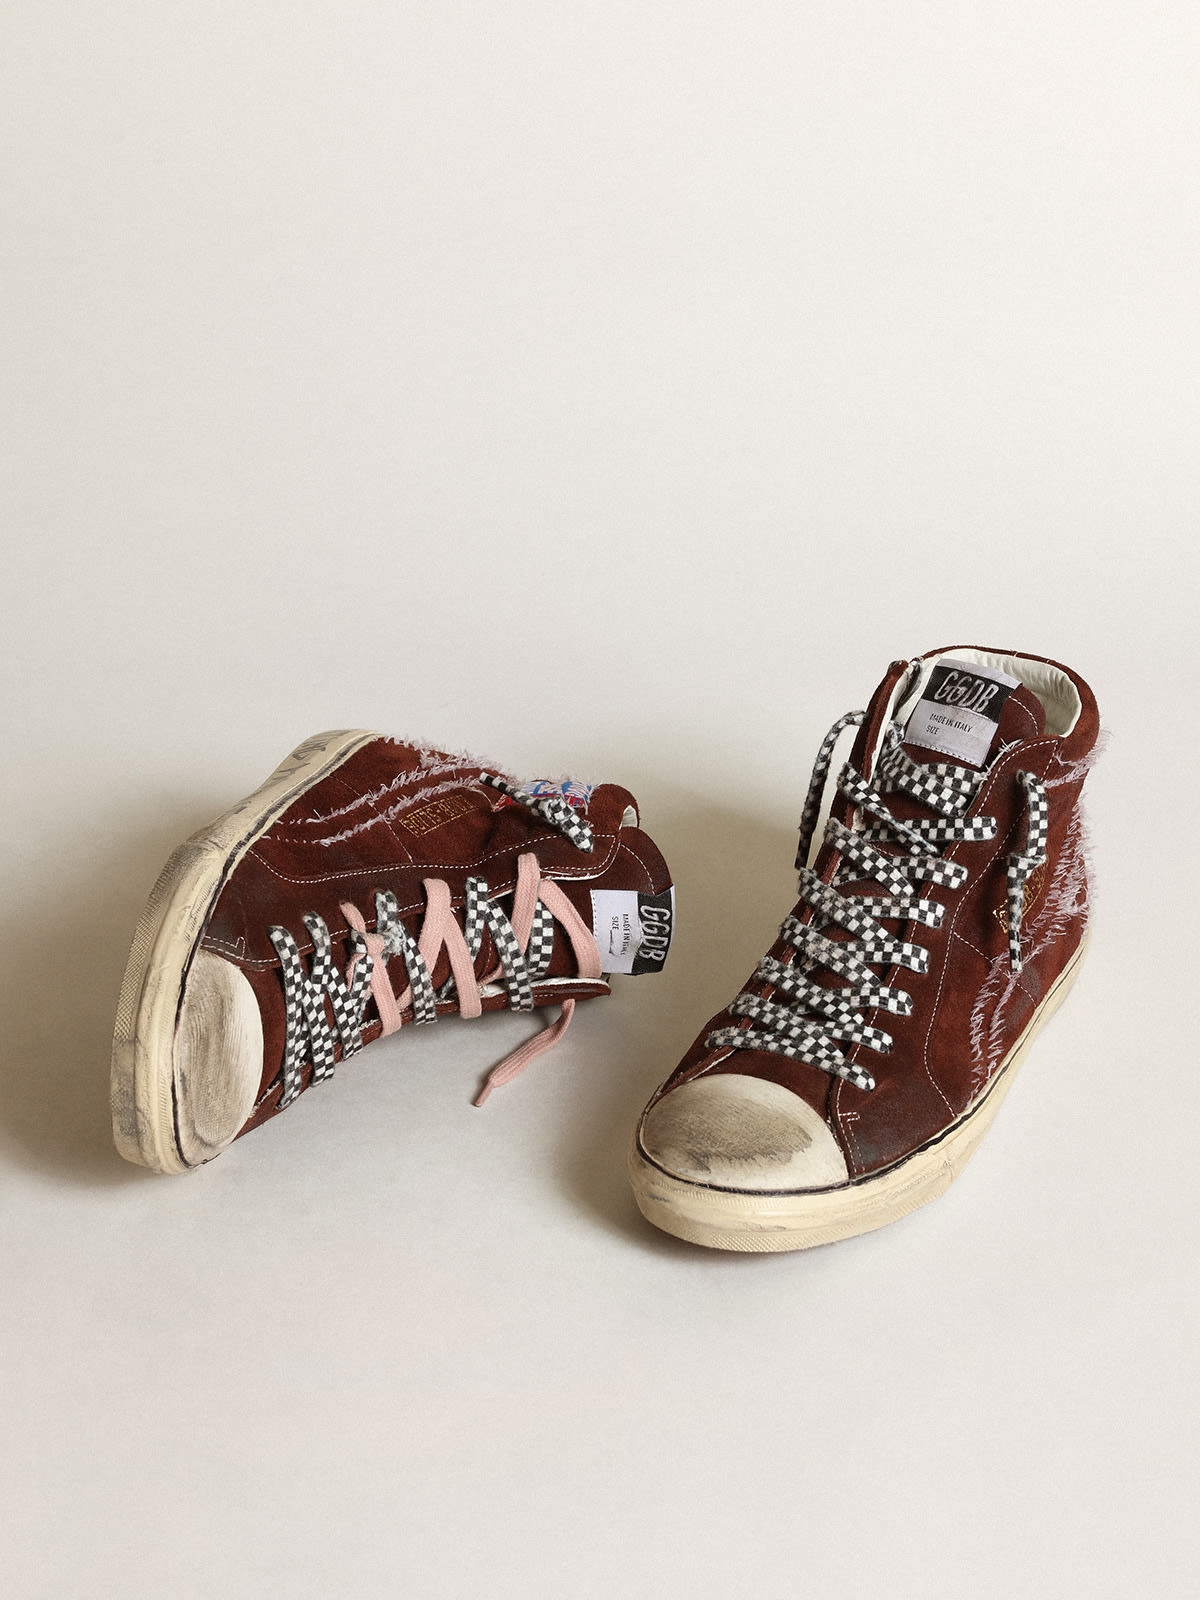 Golden Goose - Sneaker Slide in suede color cioccolato con stella e virgola con impunture bianche in 